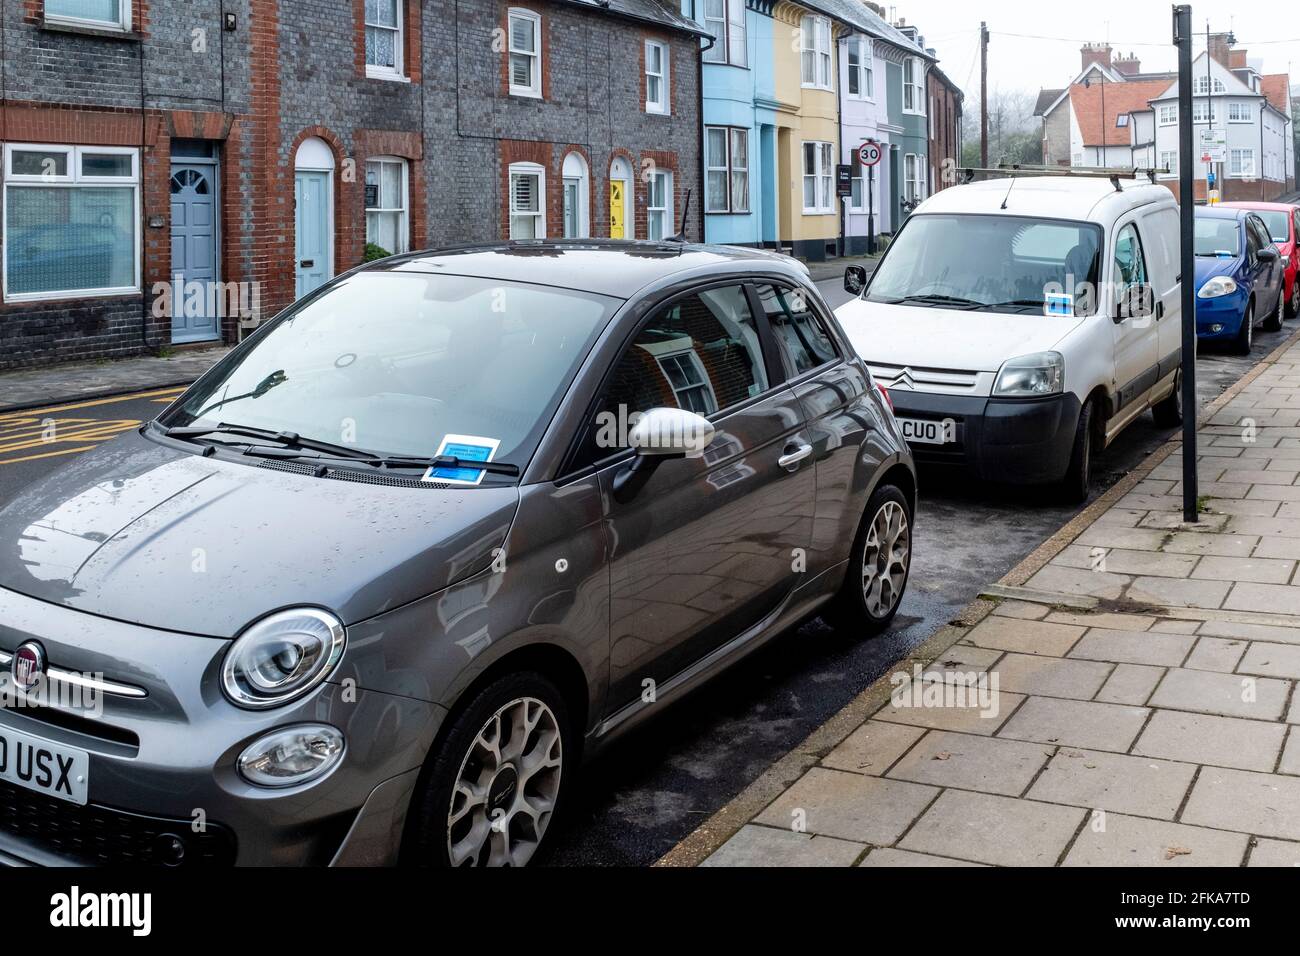 Voitures garées dans la rue avec tickets de stationnement, Lewes, East Sussex, Royaume-Uni. Banque D'Images